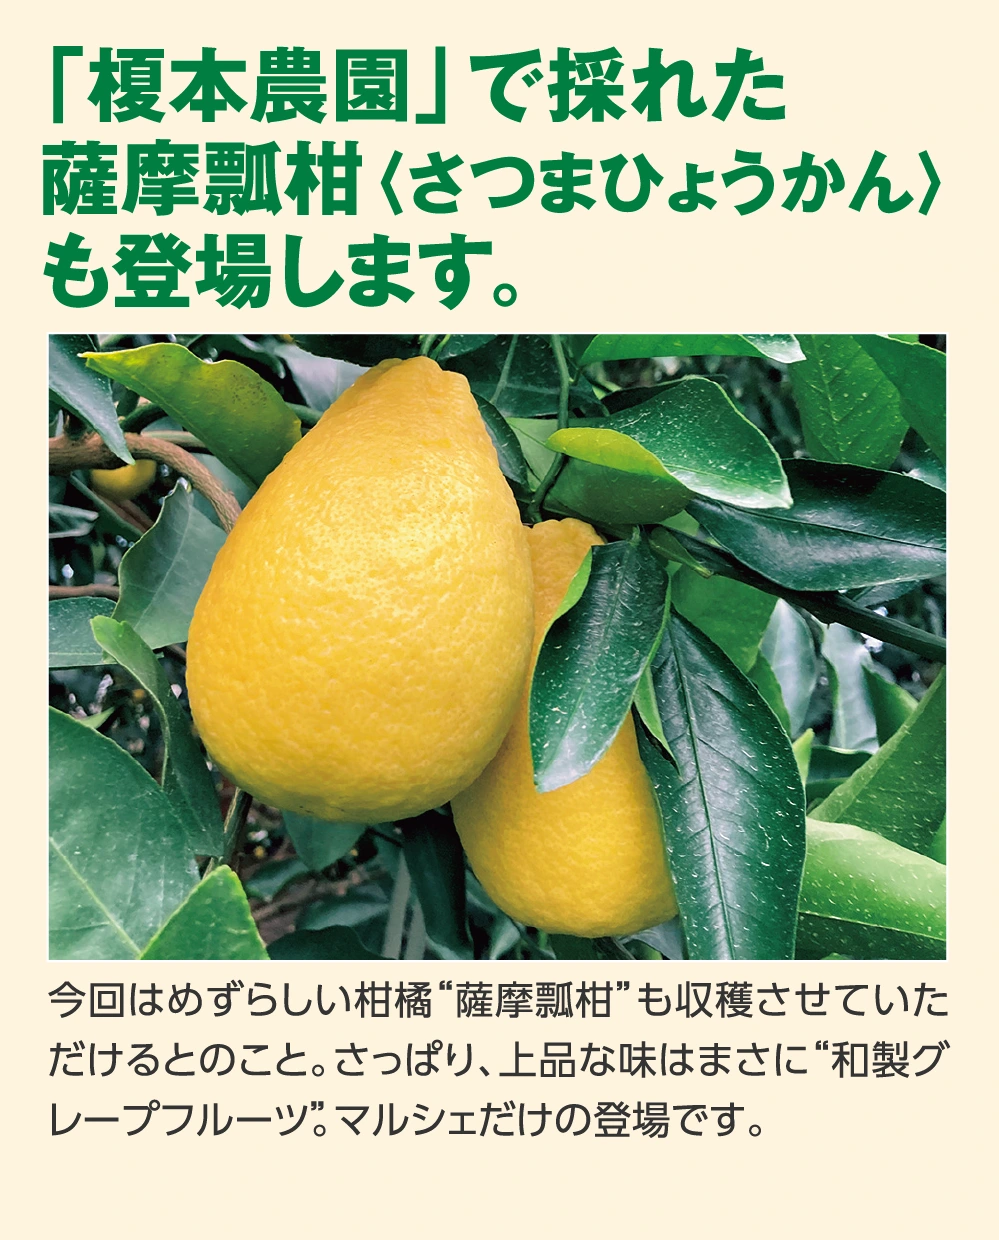 「榎本農園」で採れた
					薩摩瓢柑〈さつまひょうかん〉
					も登場します。